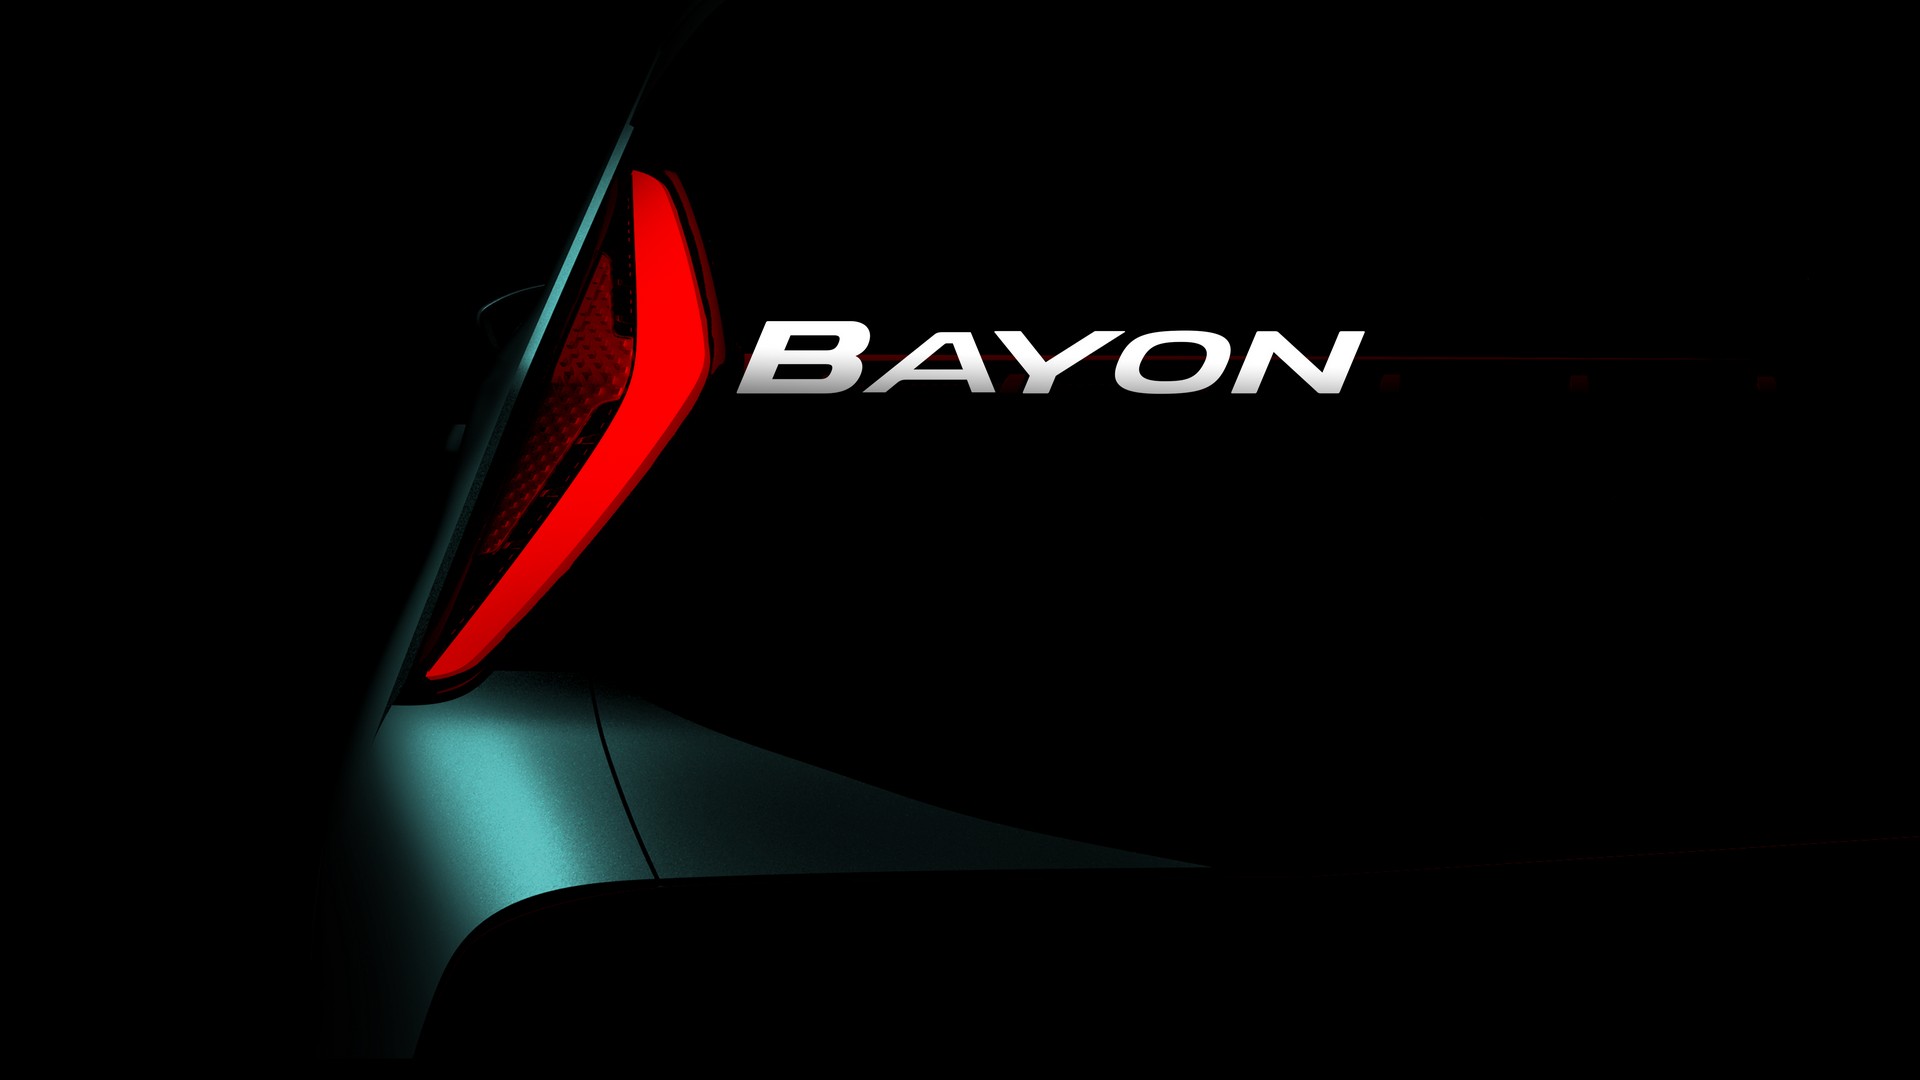 Hyundai Bayon тизер